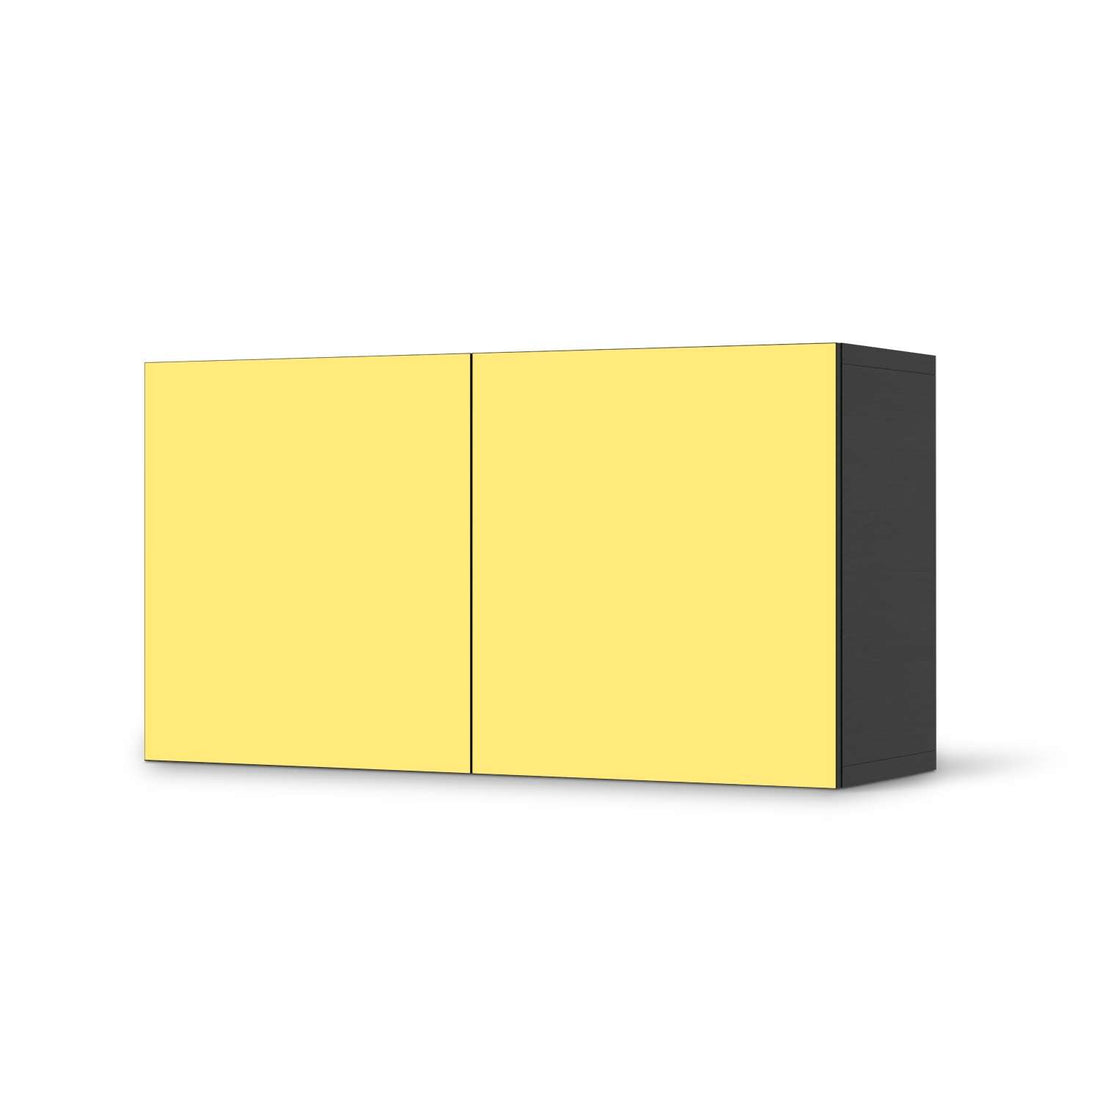 Folie für Möbel Gelb Light - IKEA Besta Regal Quer 2 Türen - schwarz